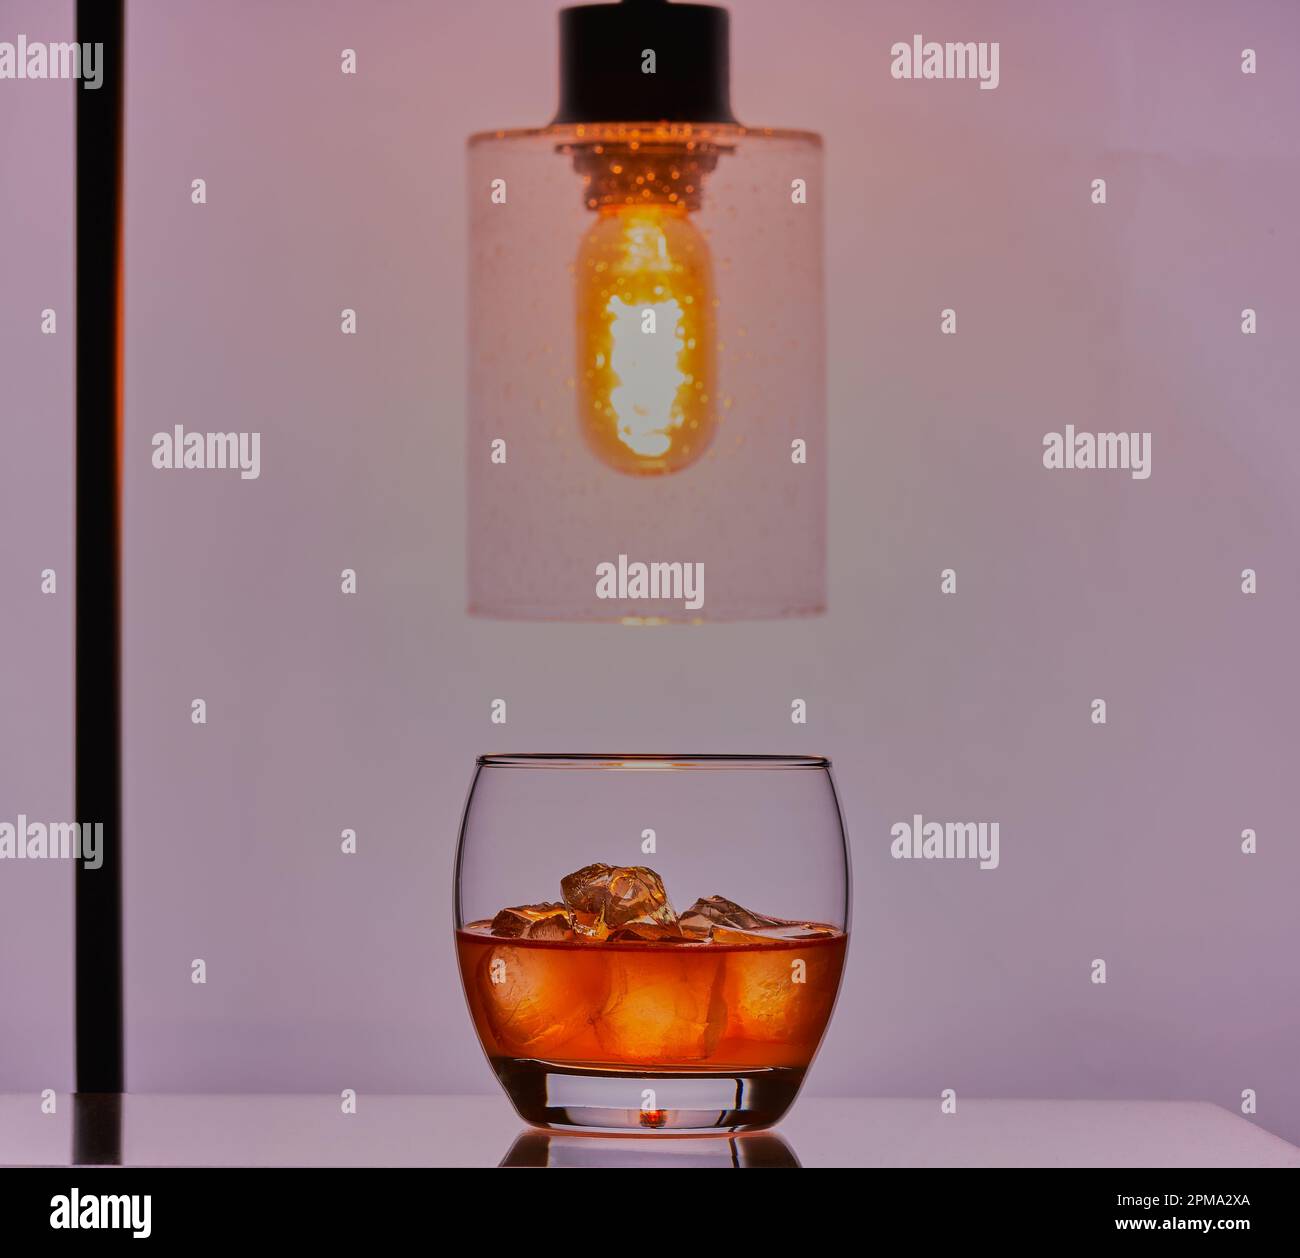 Whisky mit Eis in einem Glas mit einer Lampe darüber, die das Glas beleuchtet. Stockfoto